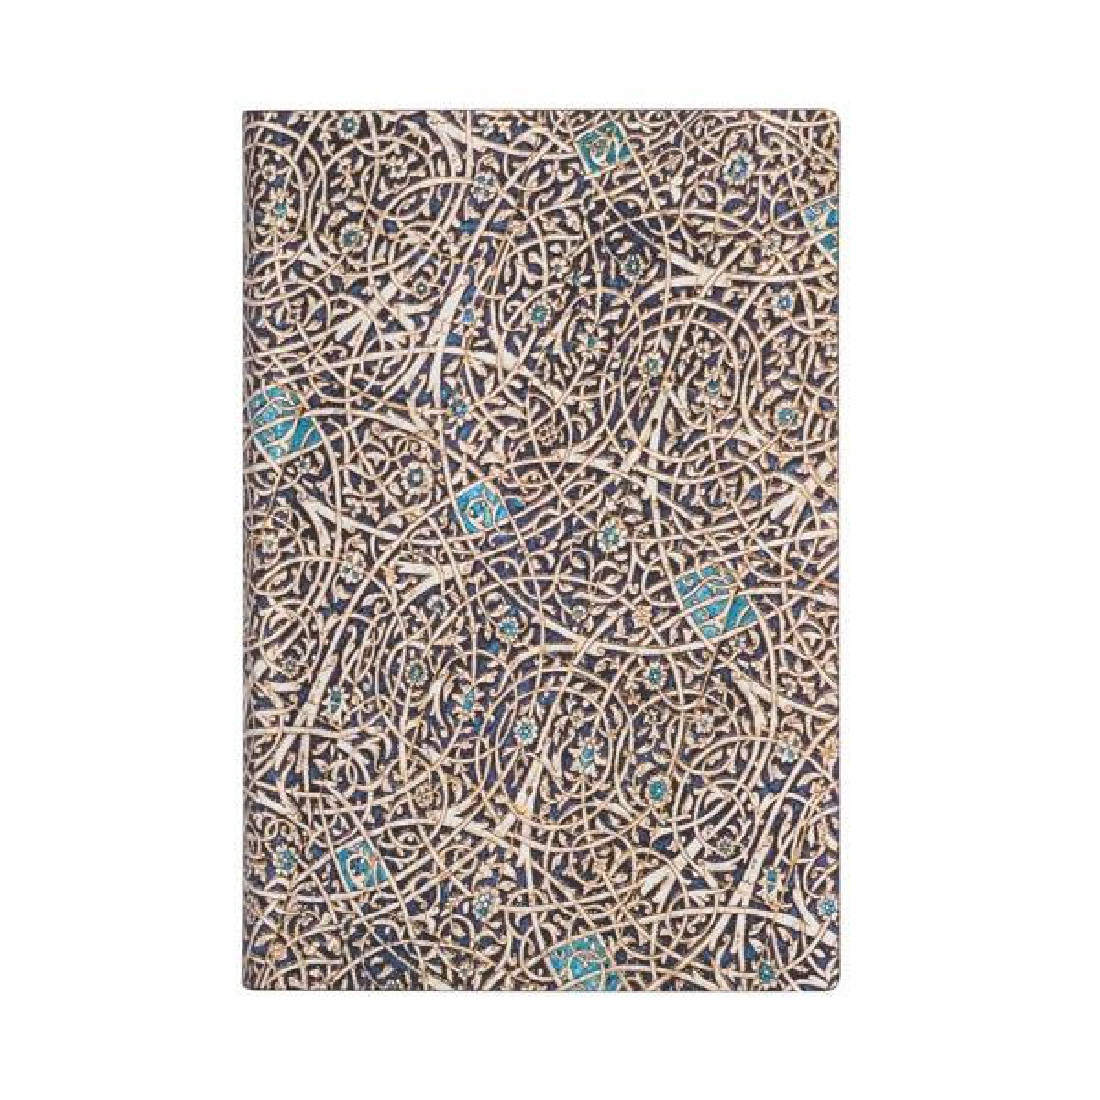 Notebook Flexis Moorish Mosaic Mini Lined Paperblanks